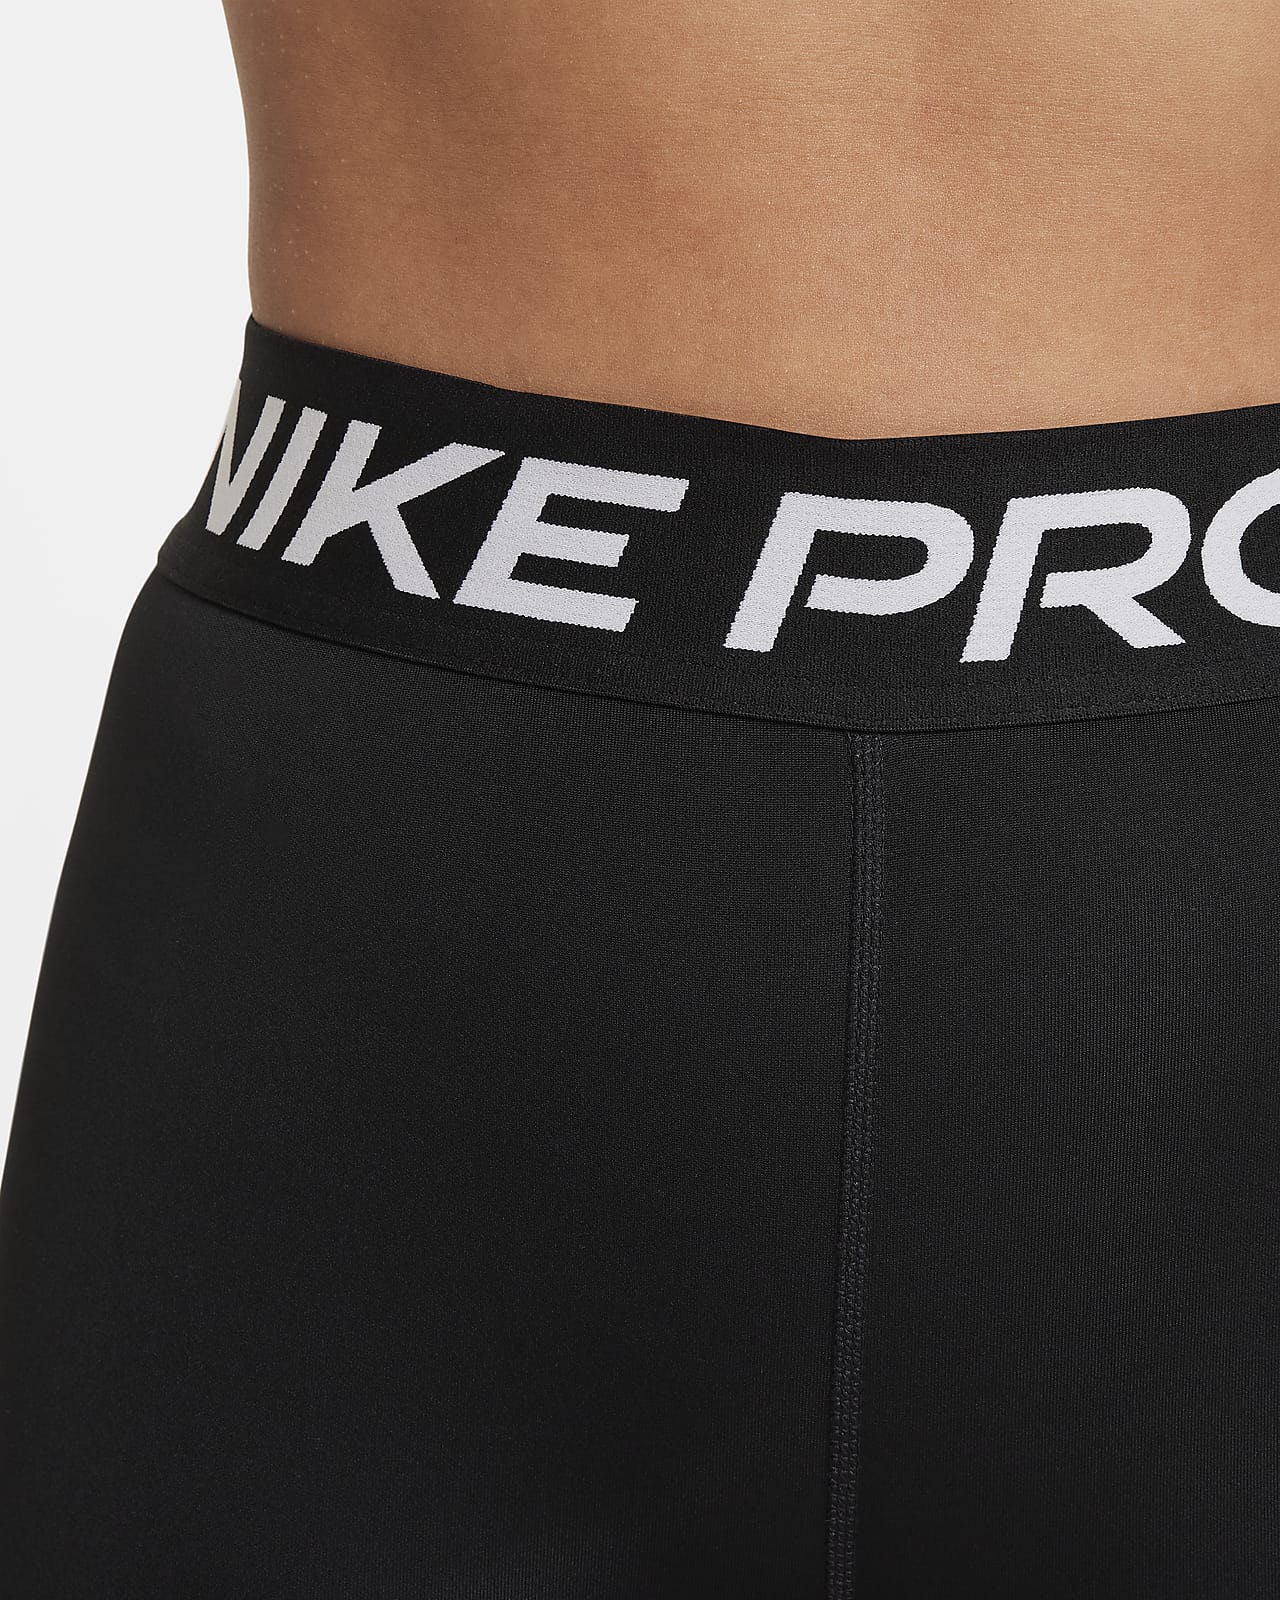 Nike Pro Big Kids' (Girls') Leggings